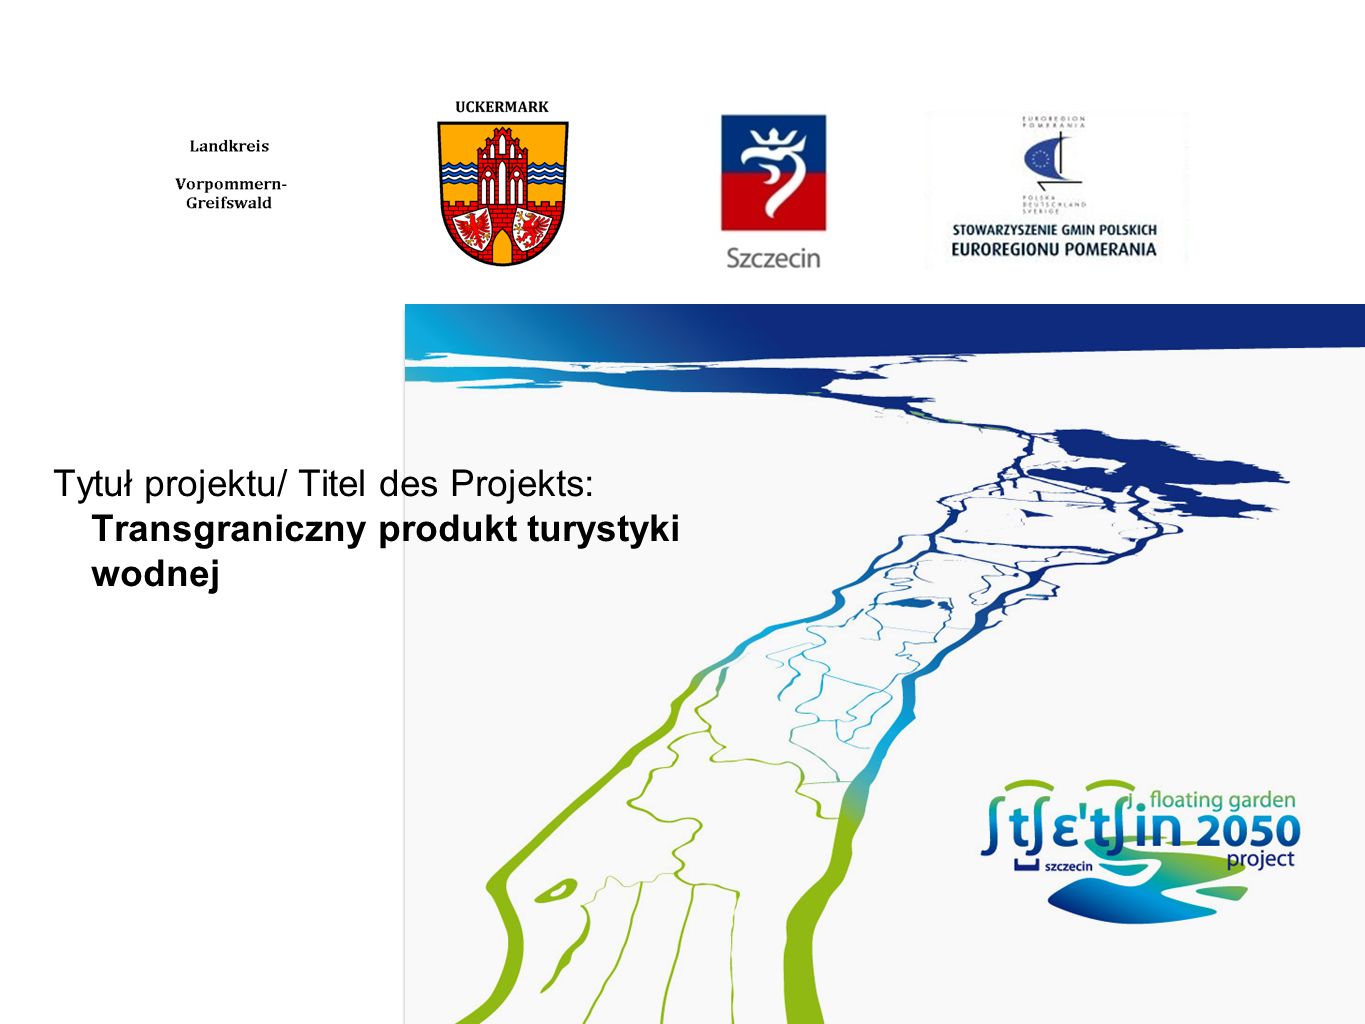 Tytuł projektu/ Titel des Projekts: Transgraniczny produkt turystyki wodnej